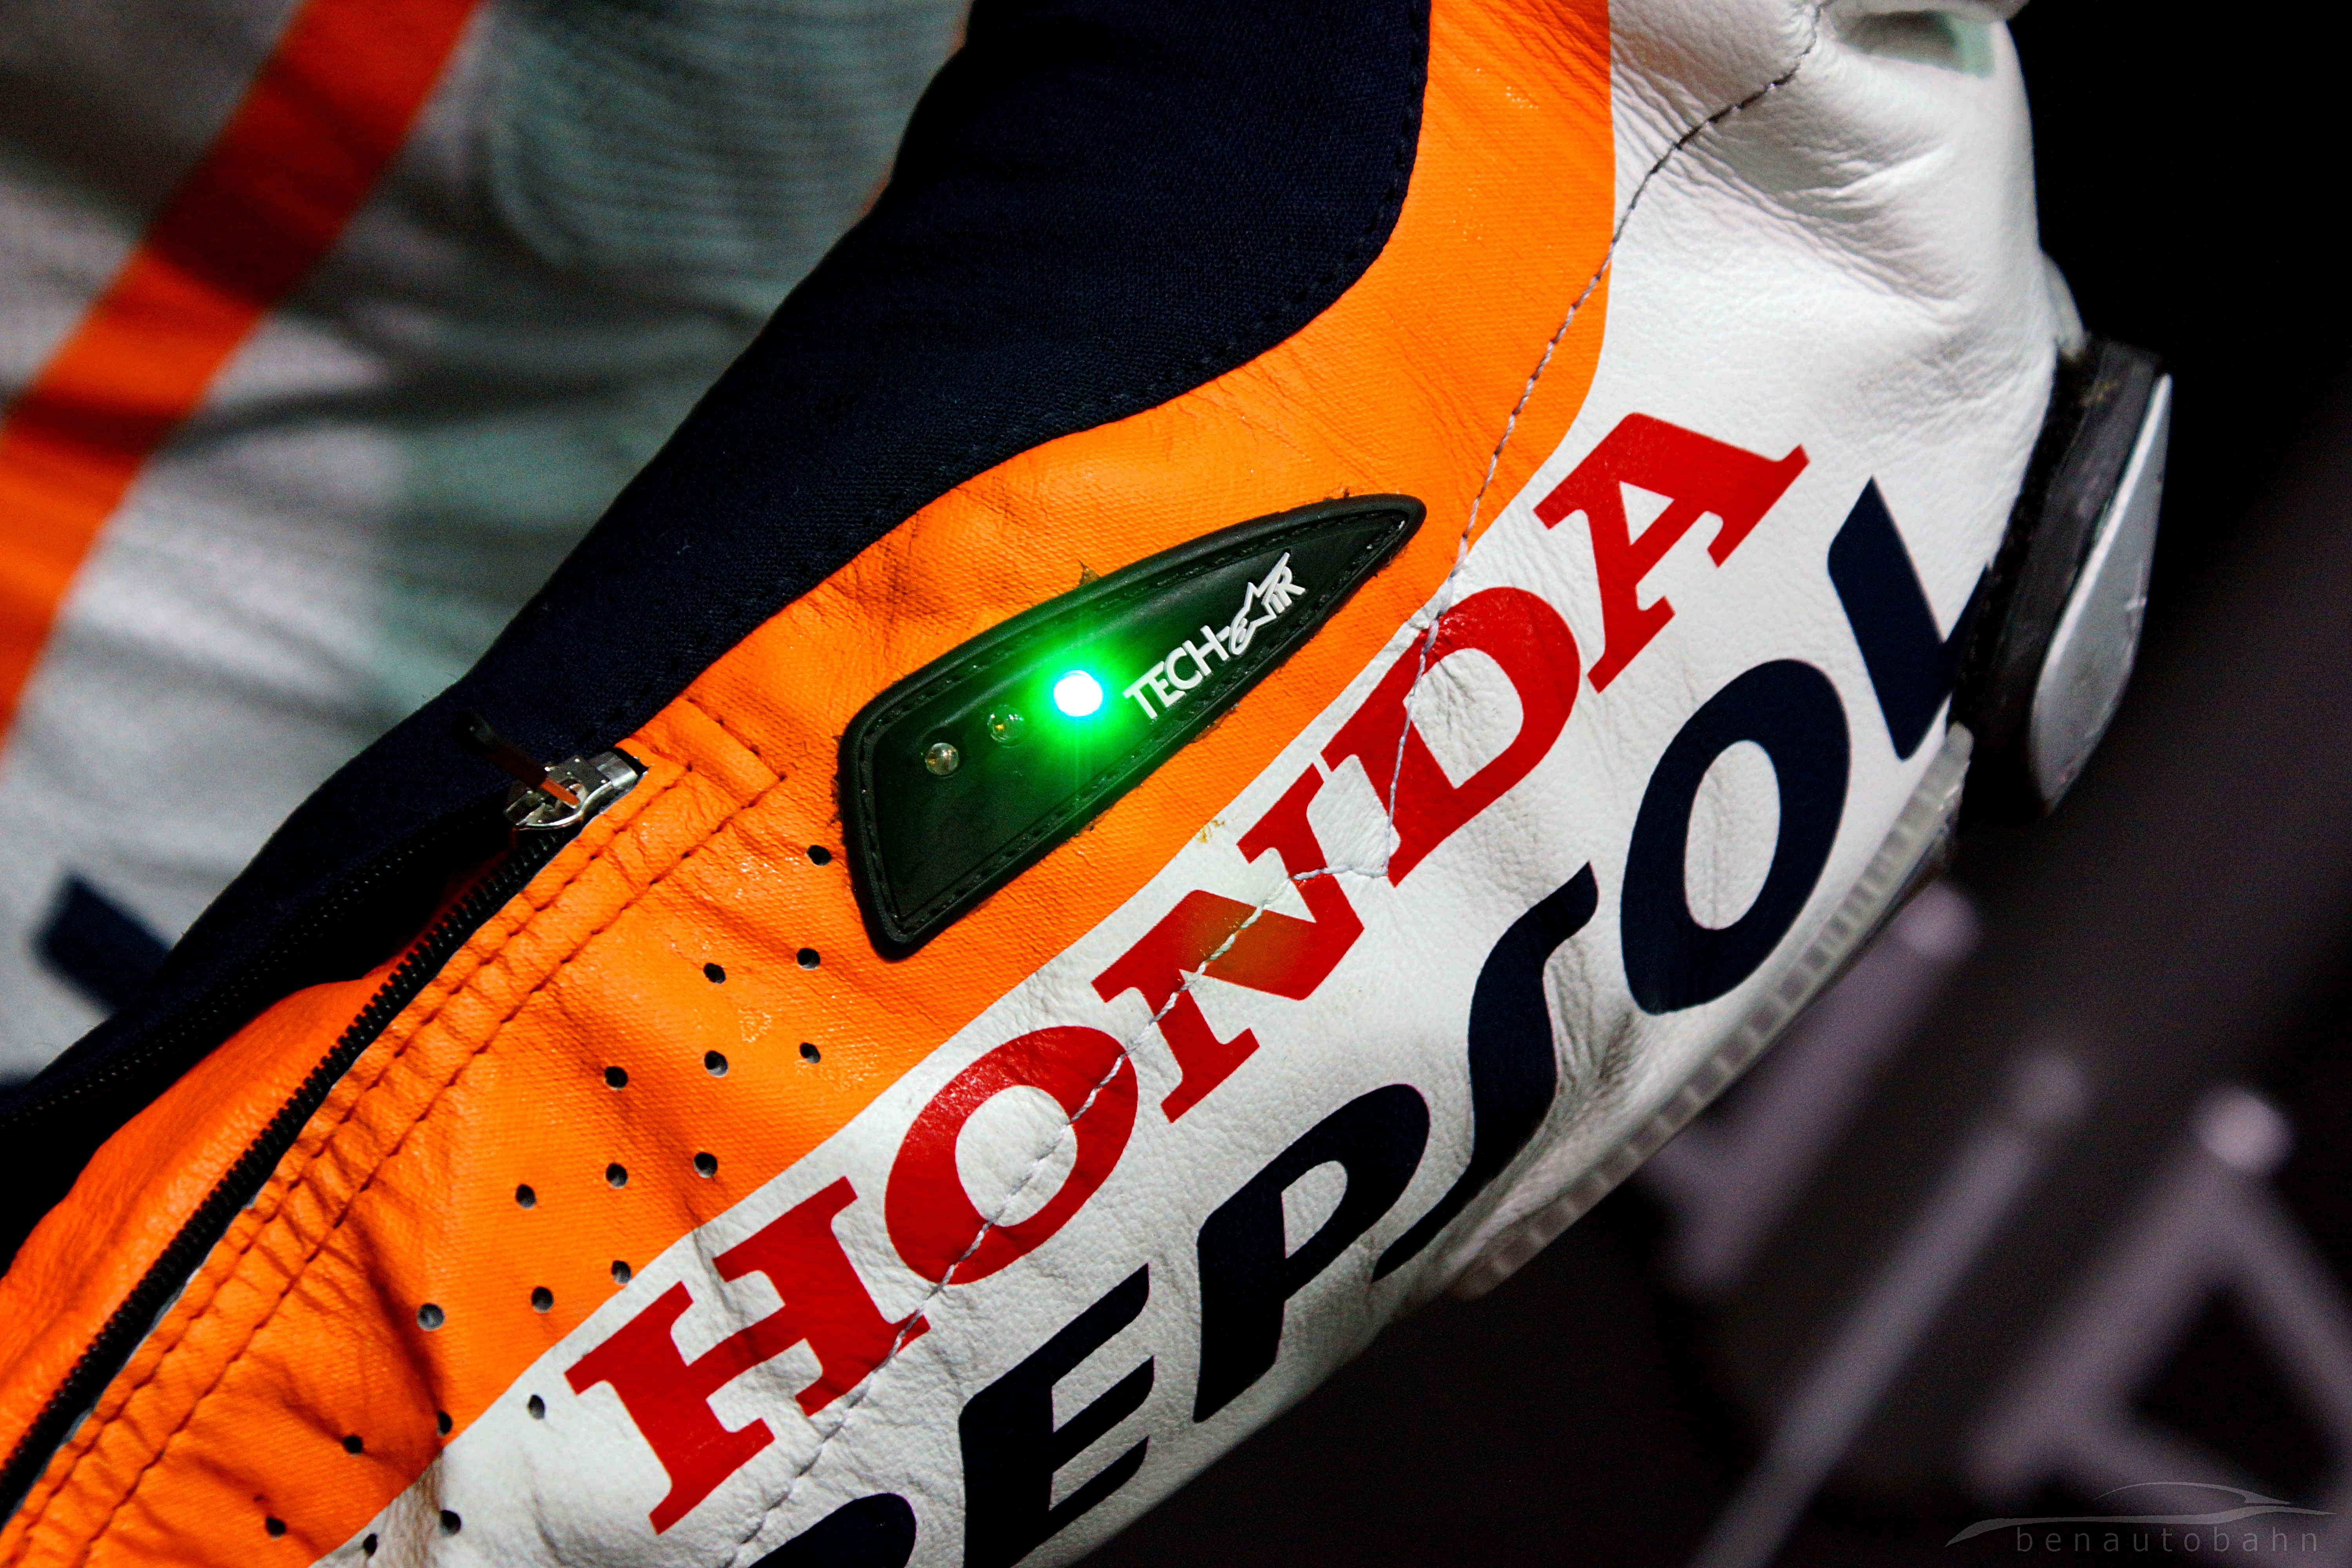 Alpinestars Tech Air worn by 2013 MotoGP world champion, Marc Marquez.